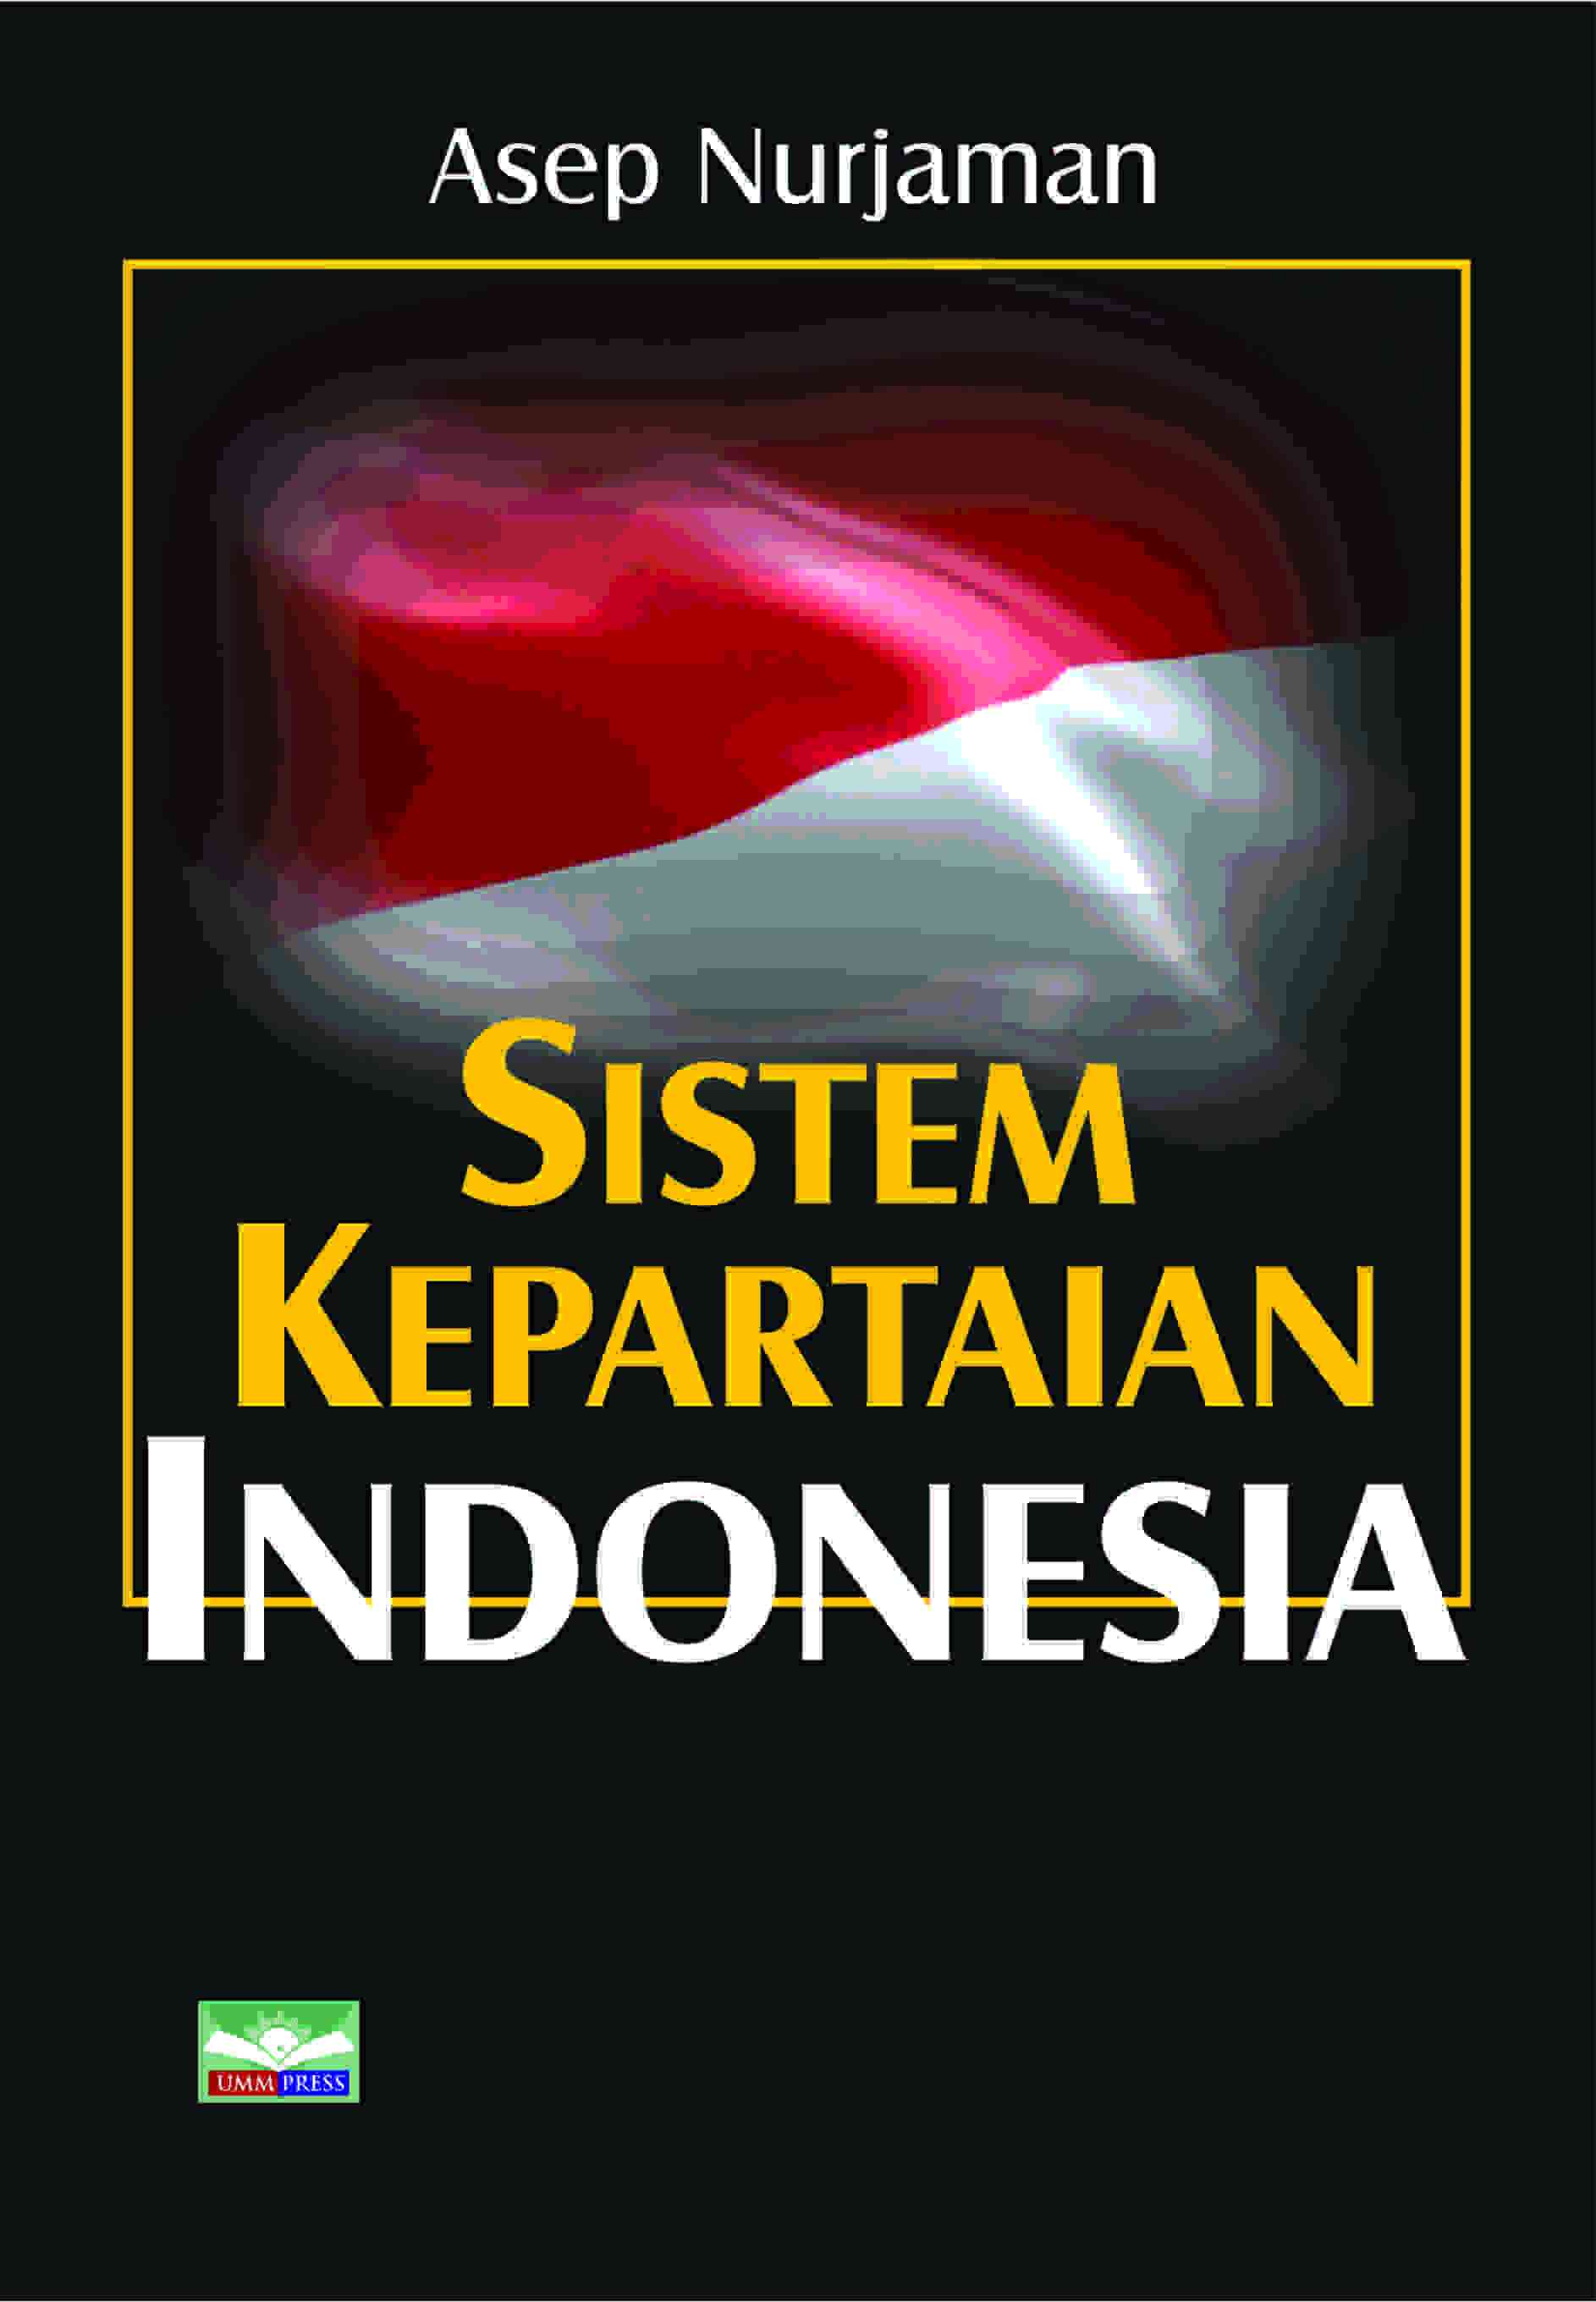 SISTEM KEPARTAIAN INDONESIA